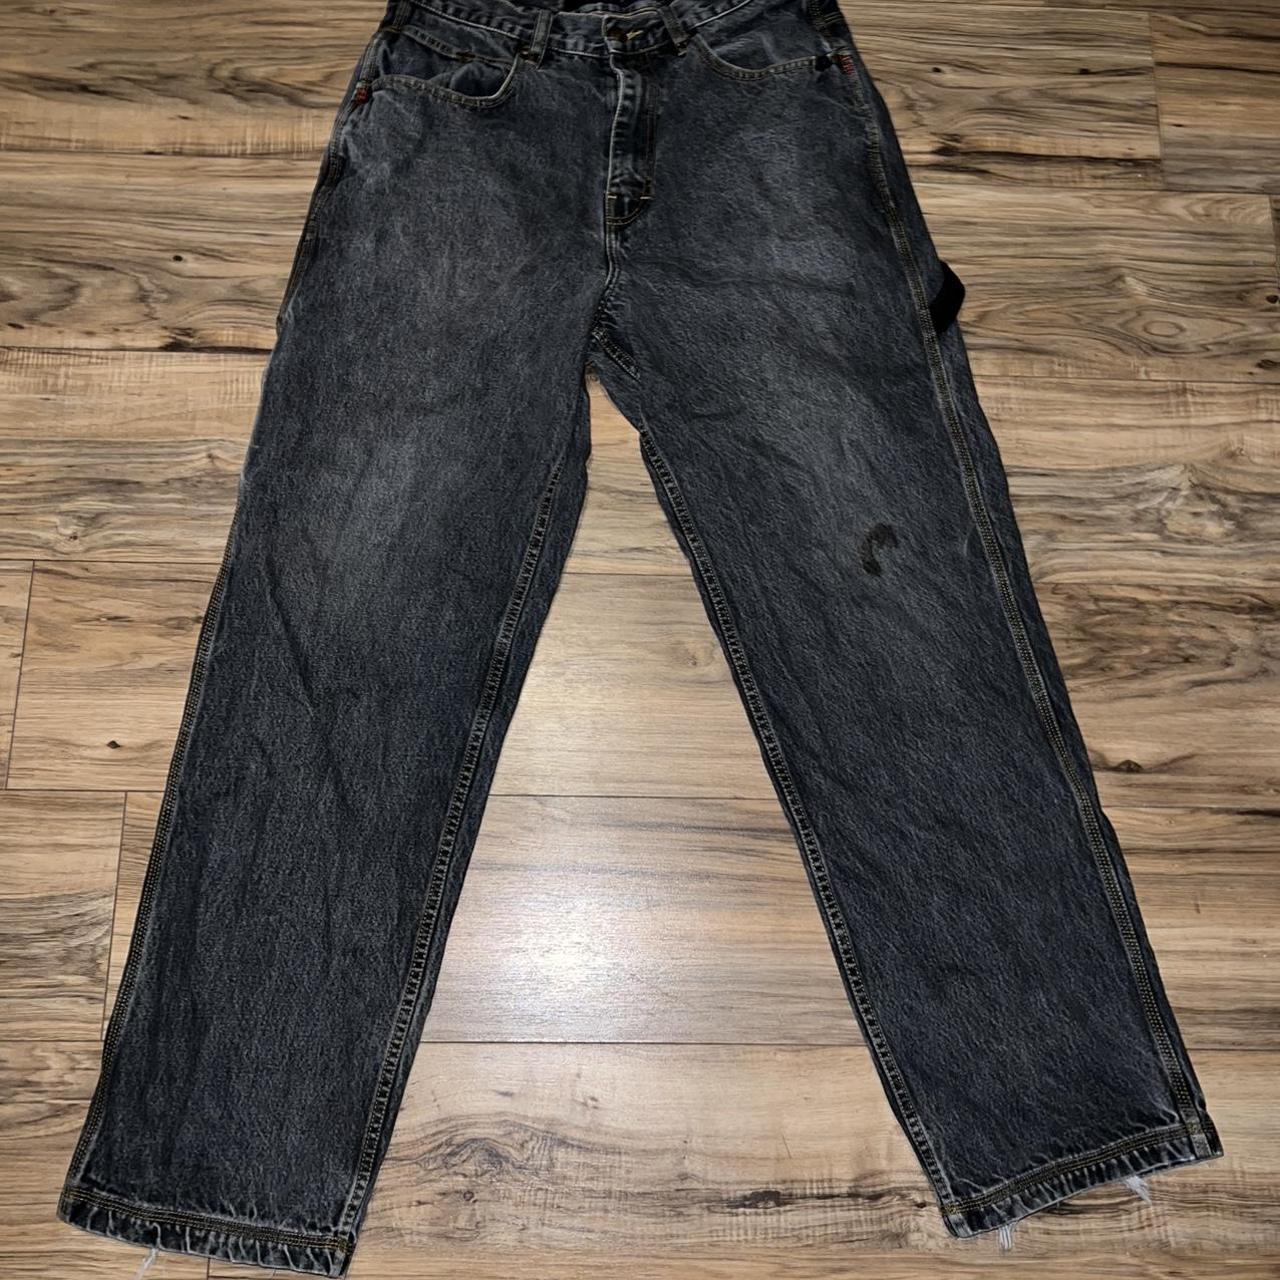 Vintage 90s Mecca Carpenter Jeans • Made in USA,... - Depop